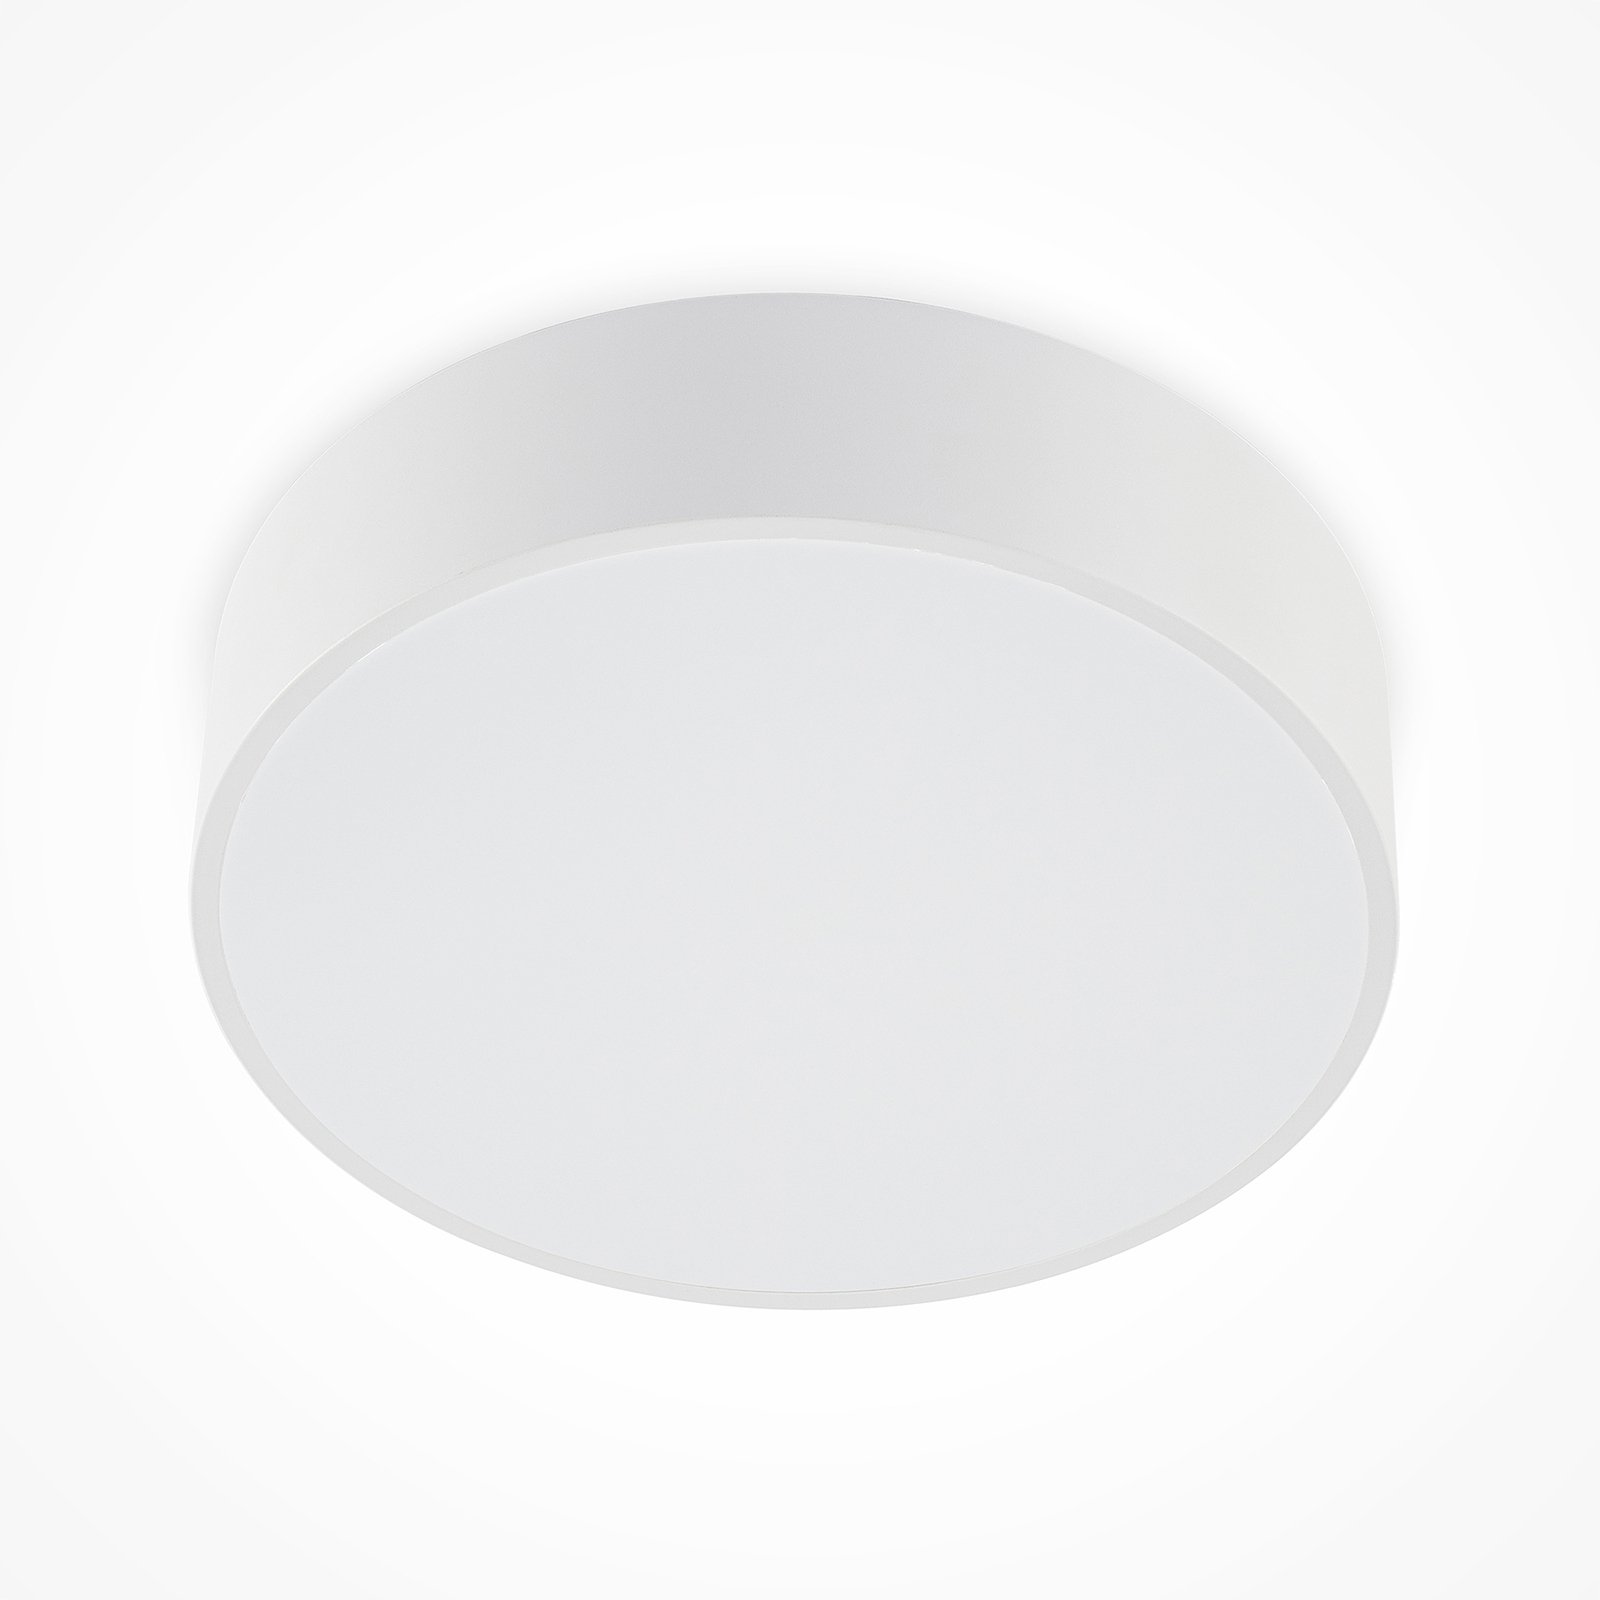 Arcchio Noabelle LED plafondlamp, wit, 40 cm